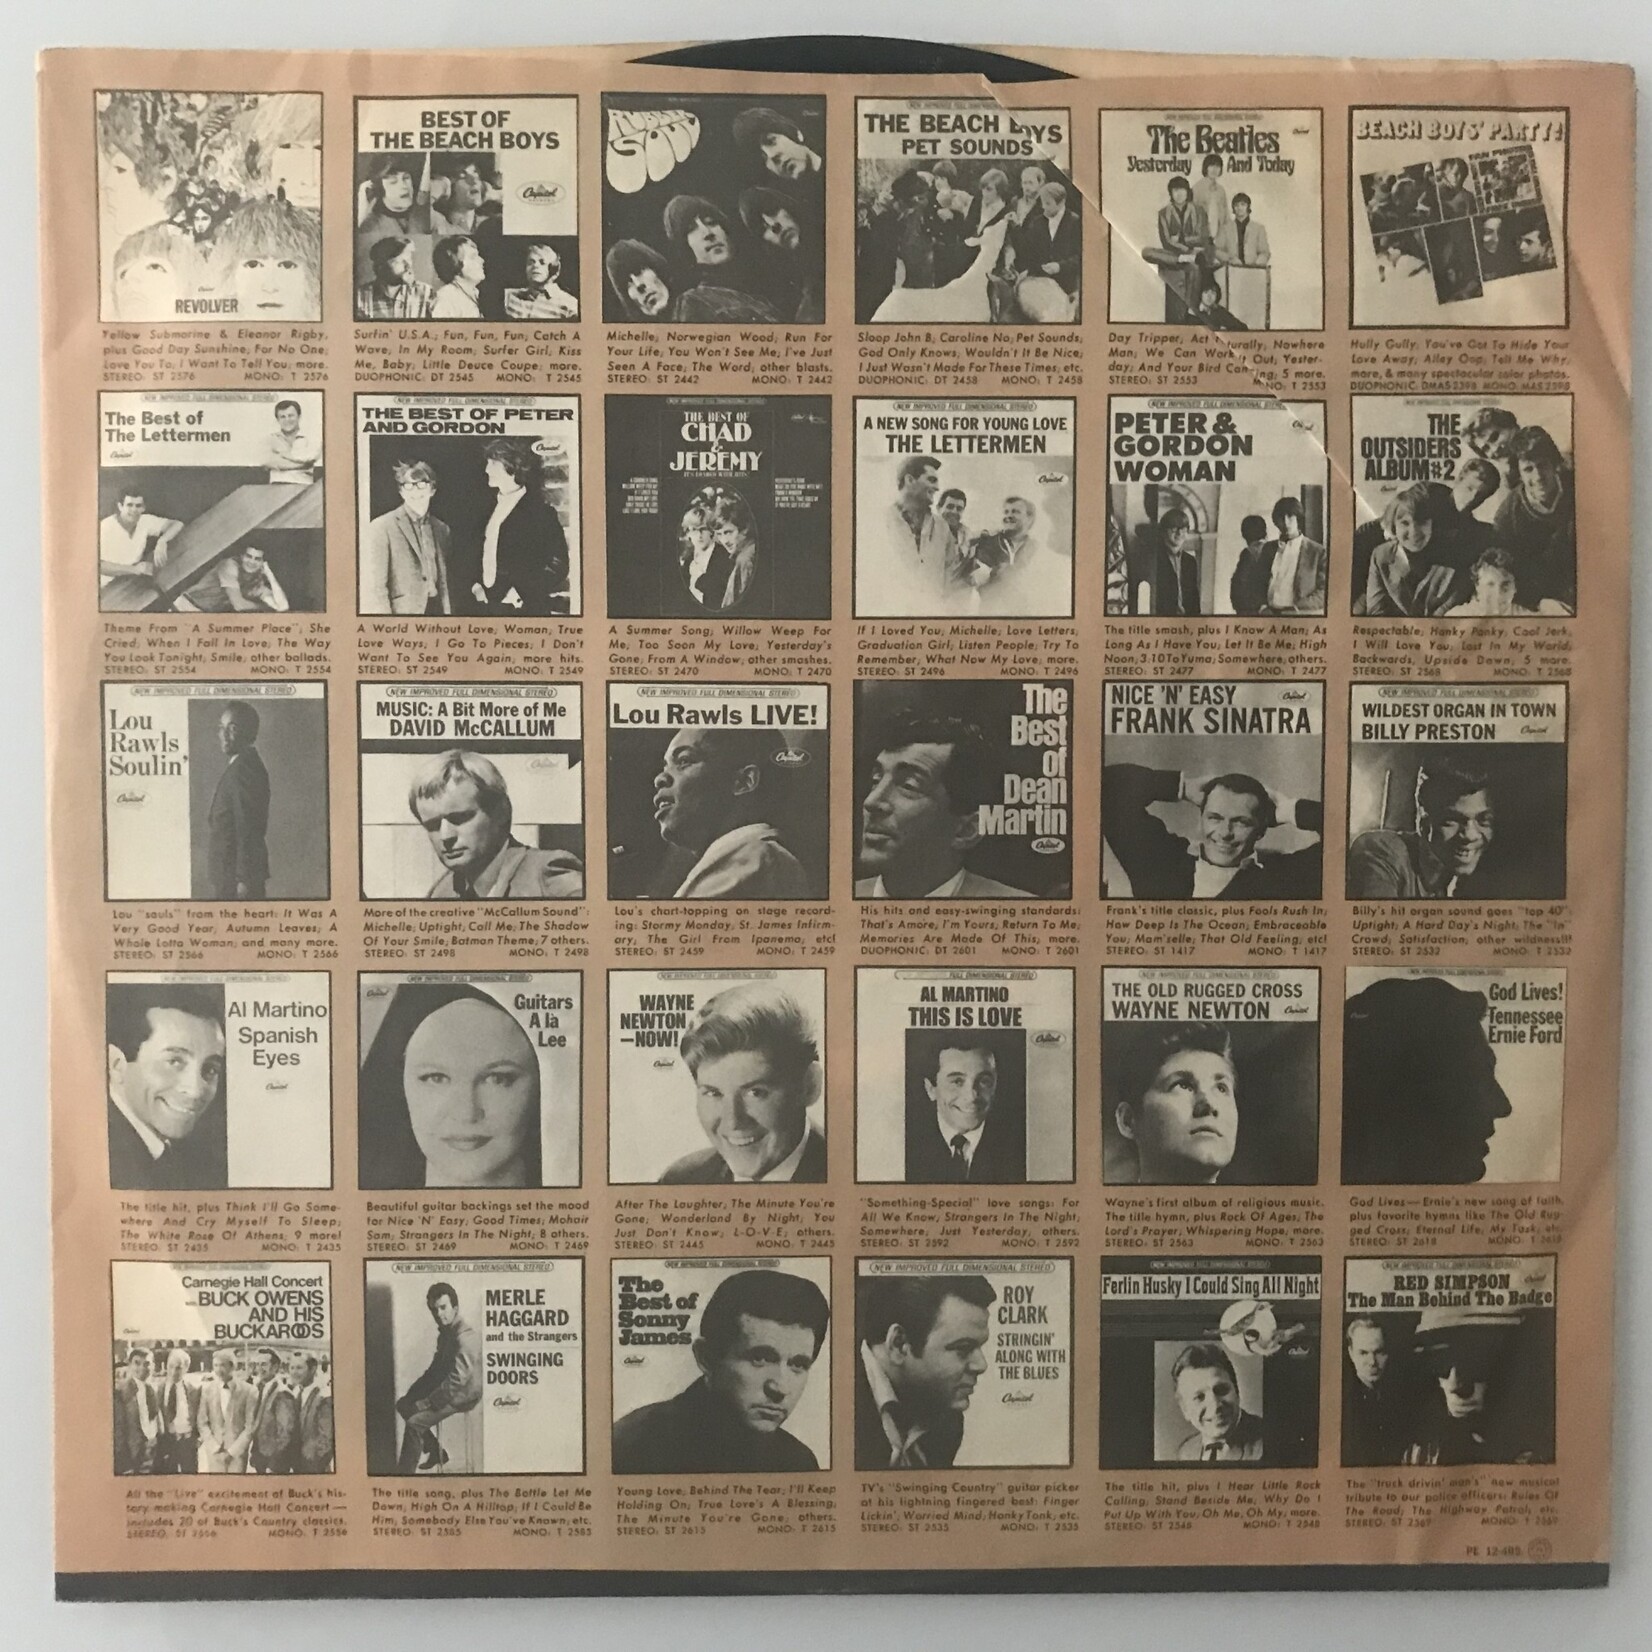 Beatles - Meet the Beatles - ST 2047 - Vinyl LP (USED)